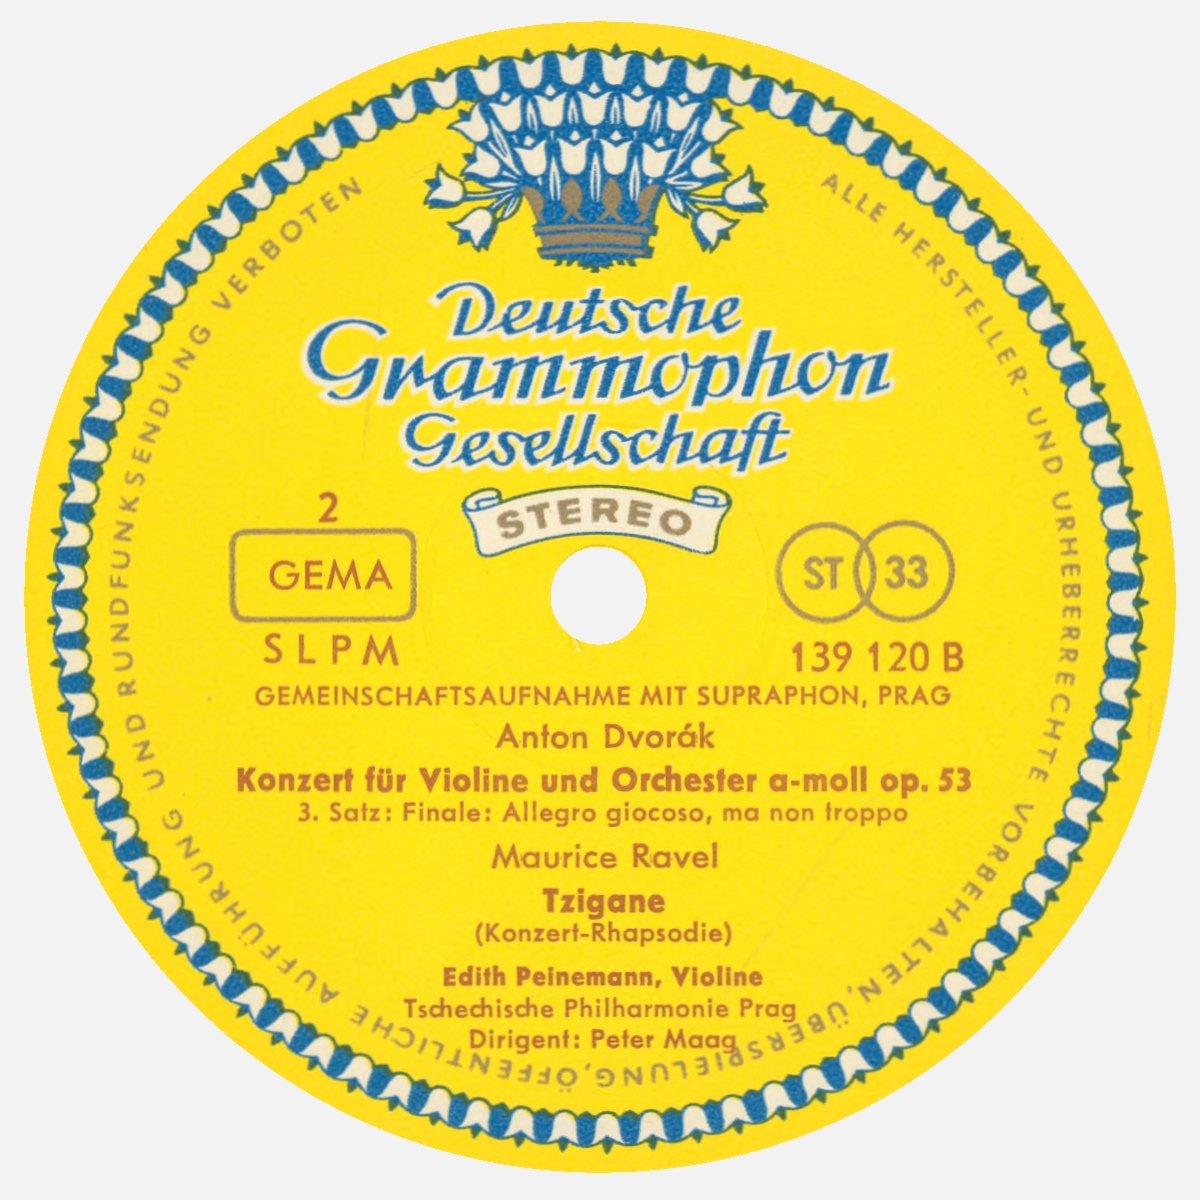 Étiquette verso du disque Deutsche Grammophon Gesellschaft SLMP 139 120